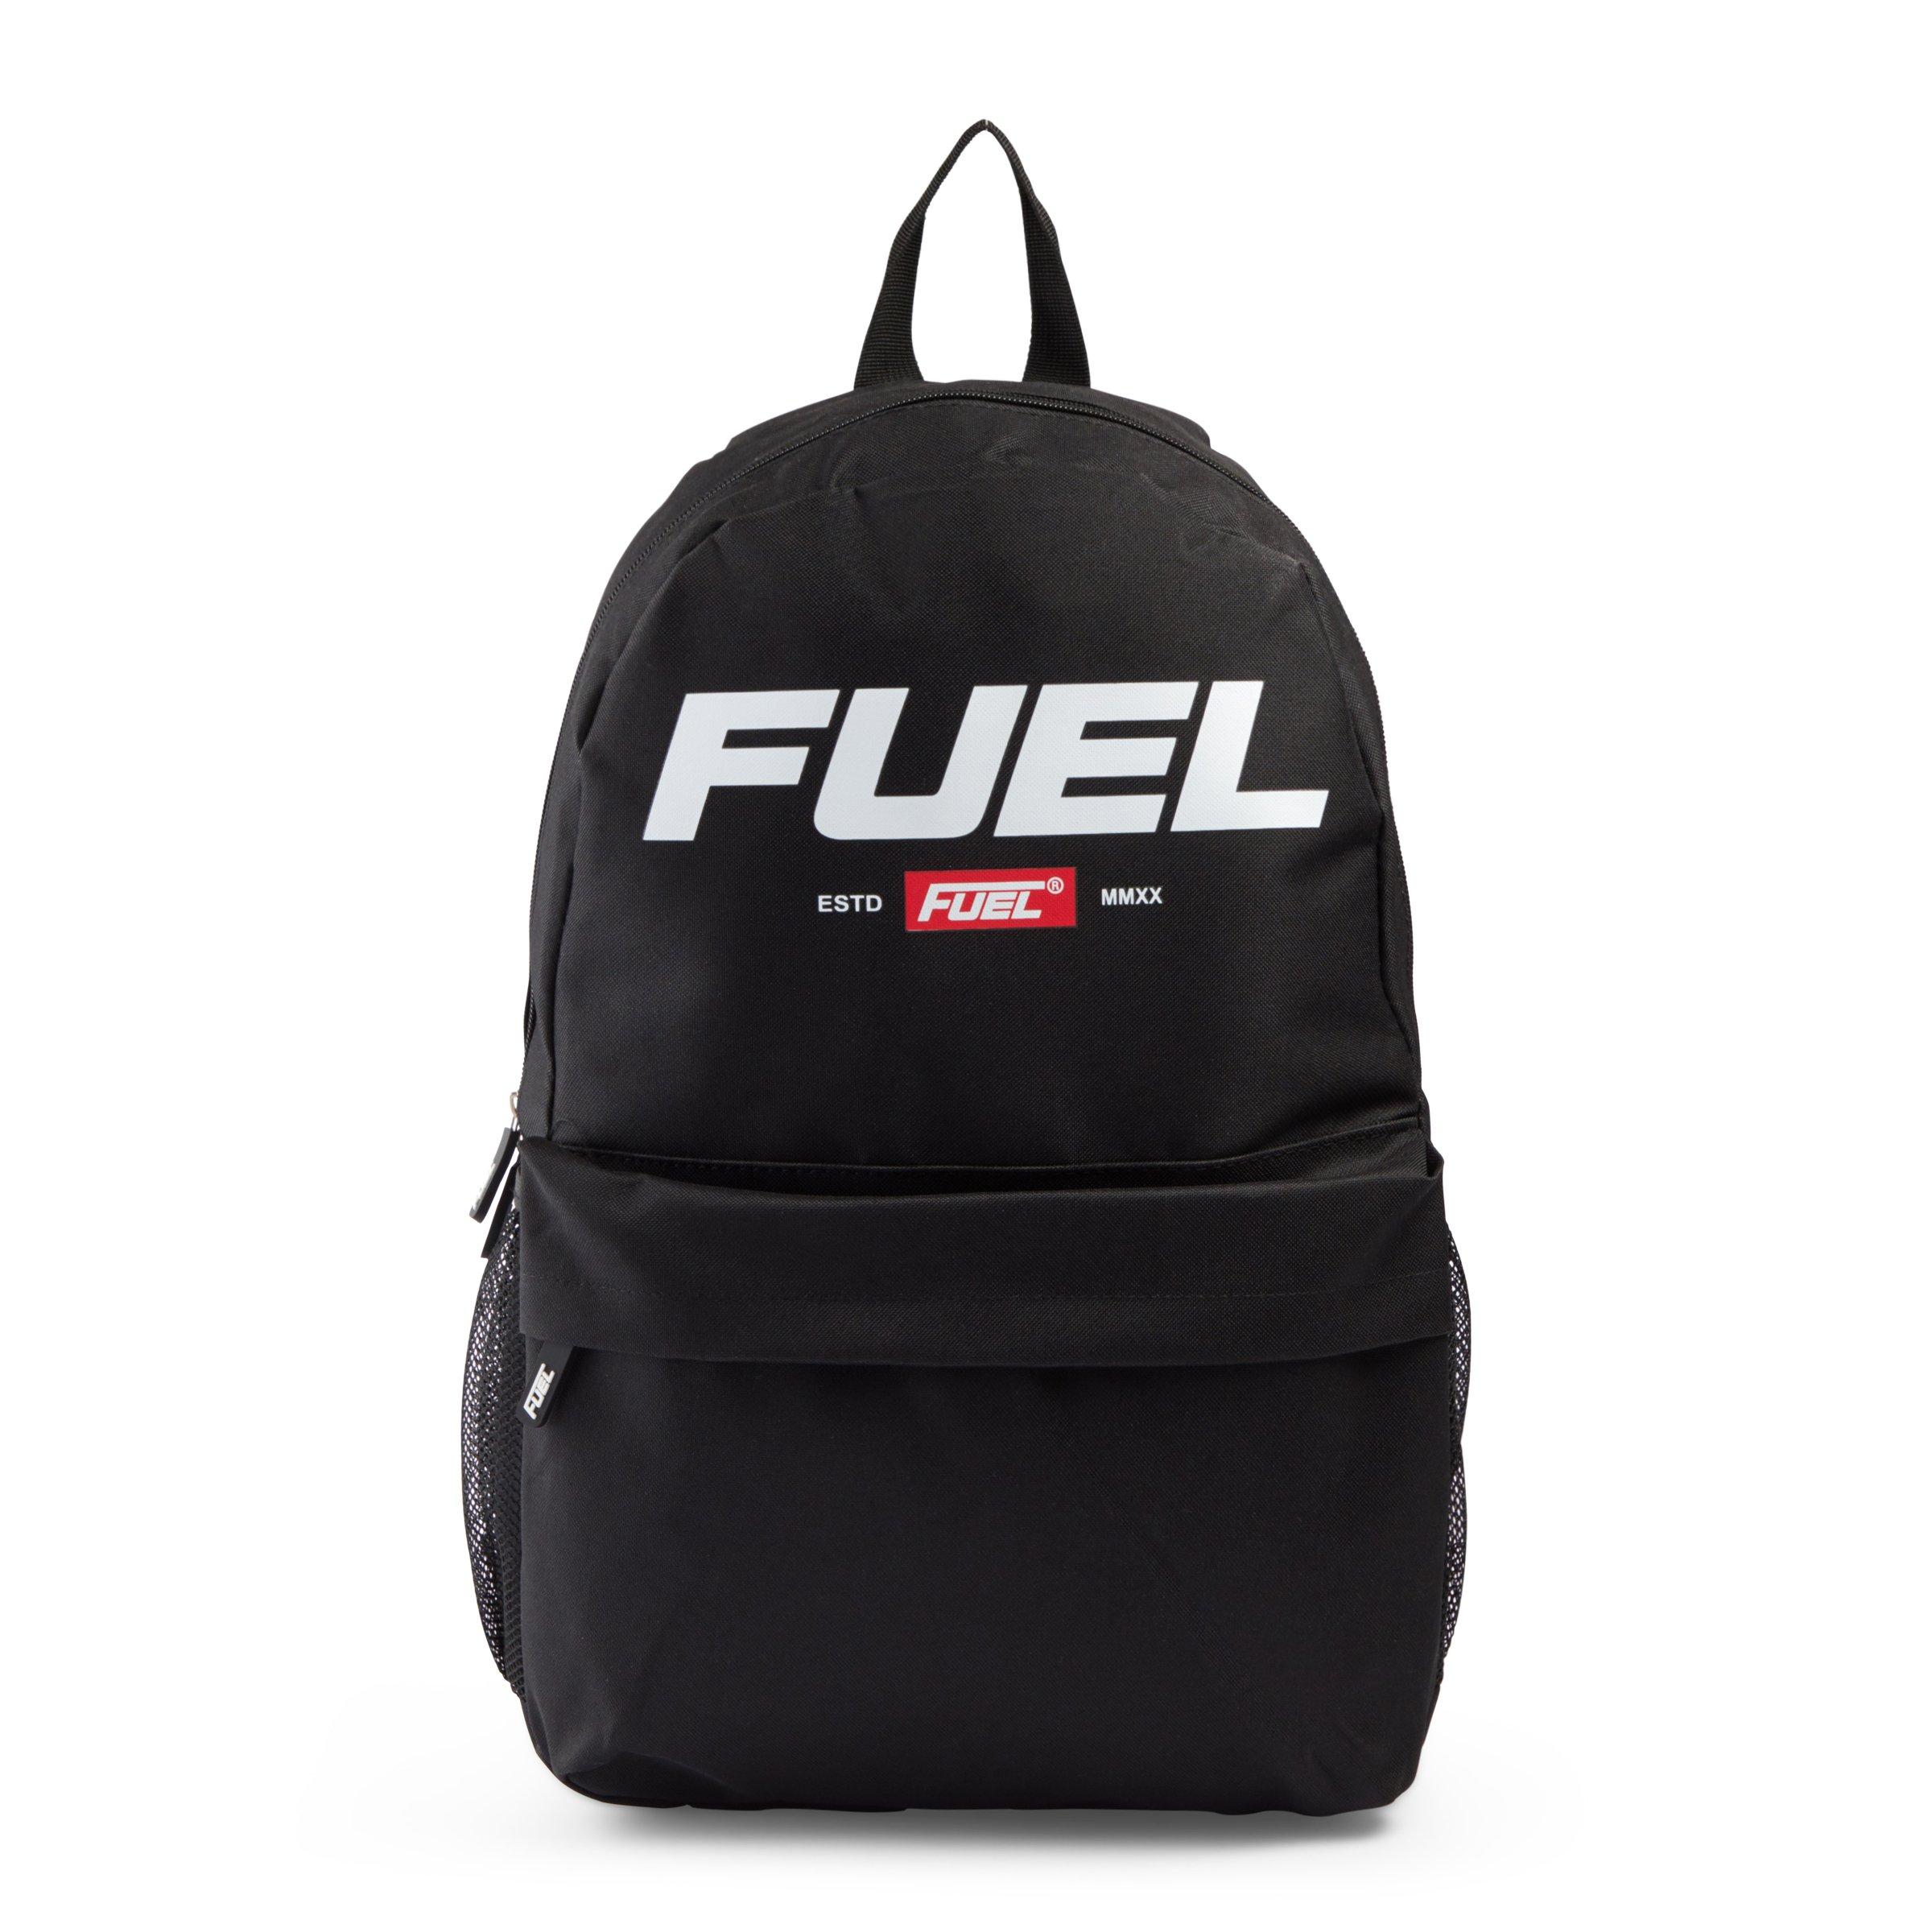 Fuel Black Branded Backpack (3100608) | Truworths.co.za